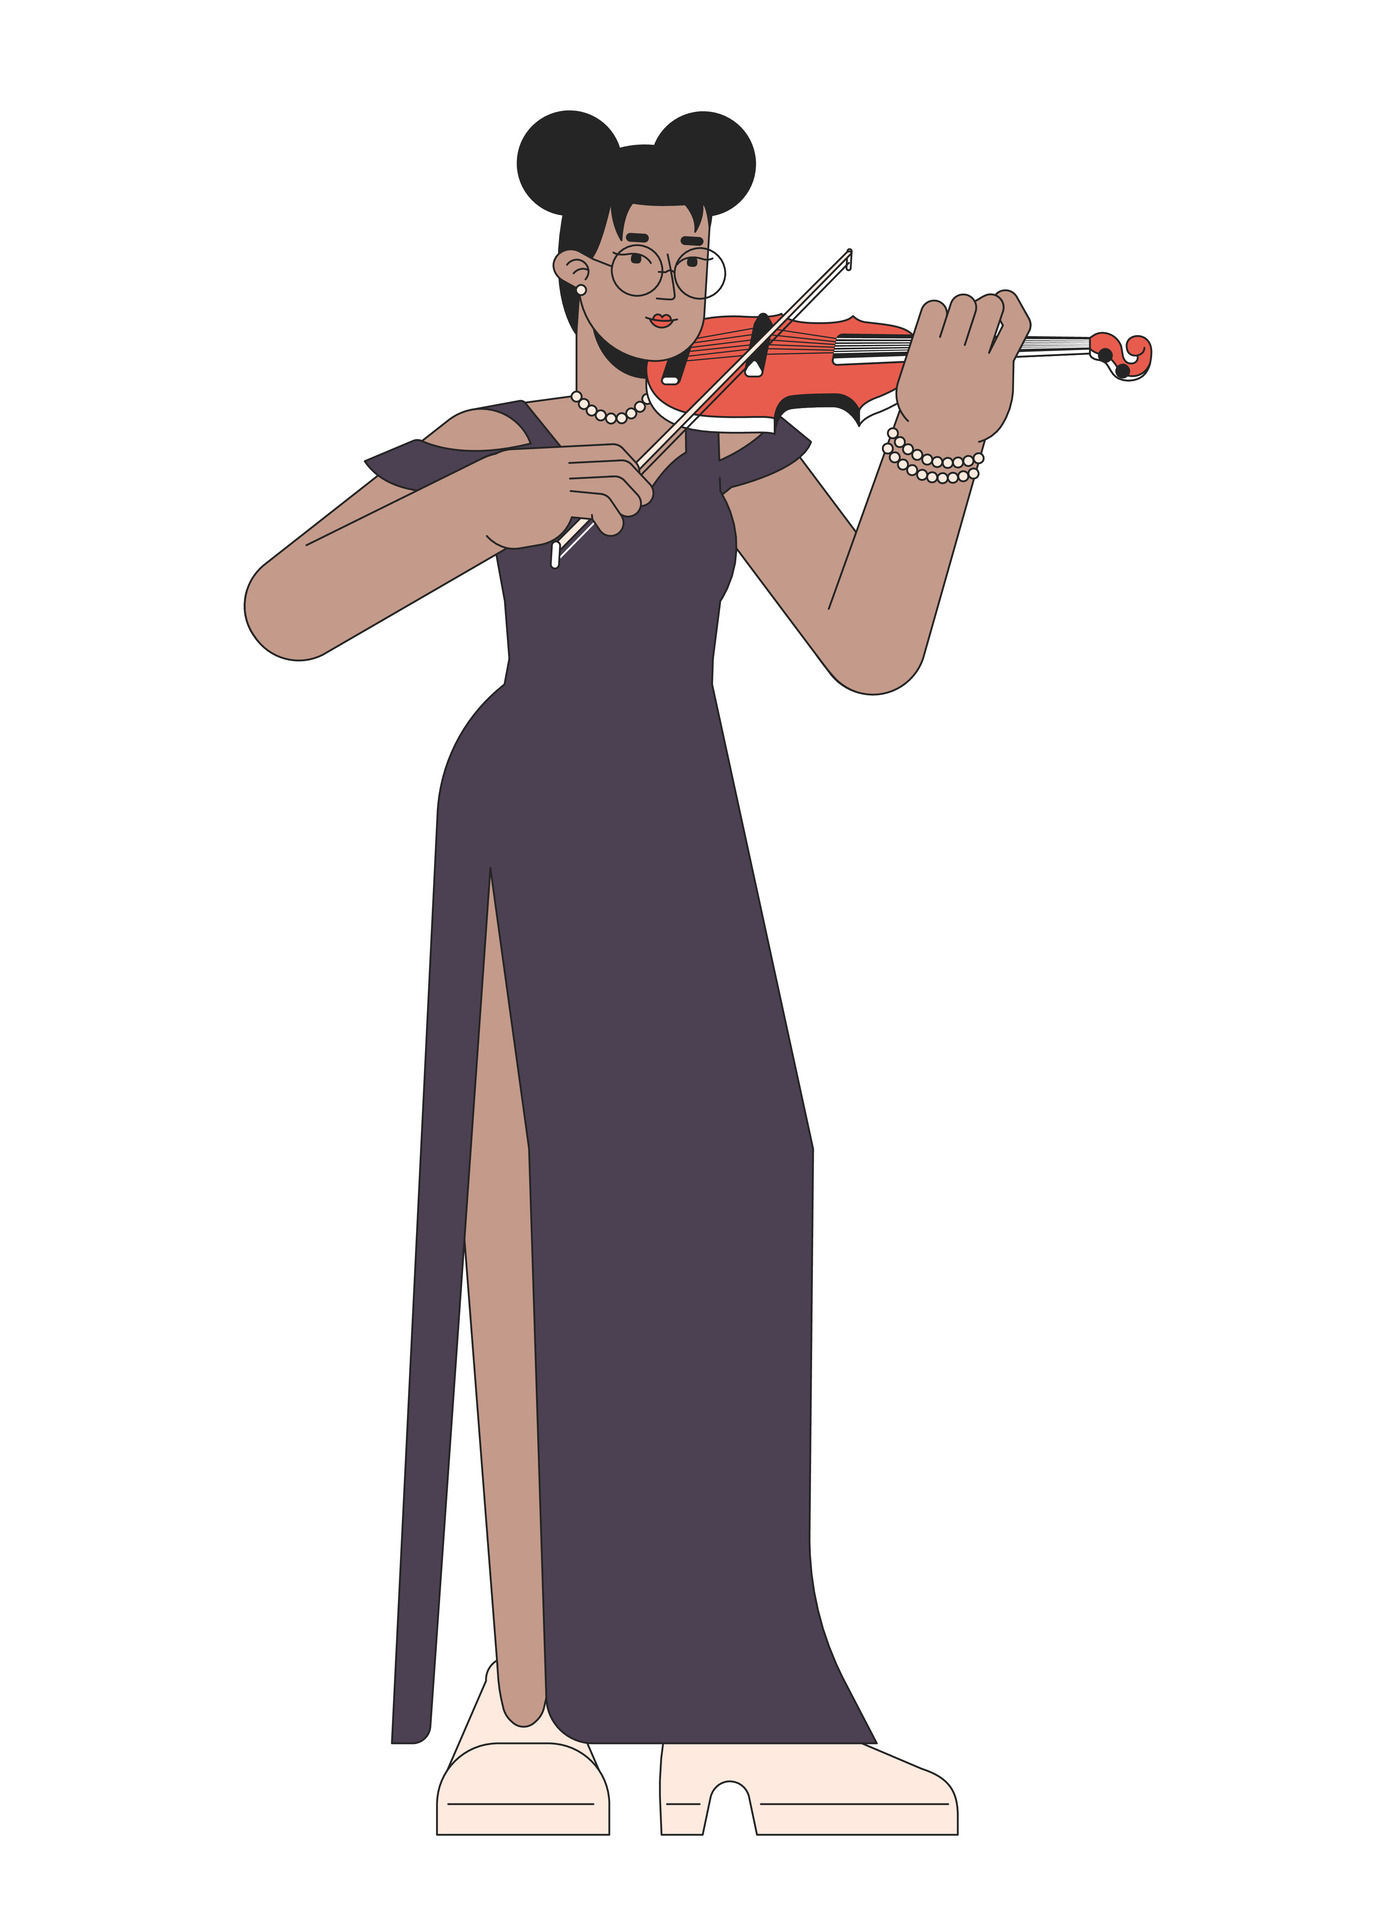 https://static.vecteezy.com/ti/vecteur-libre/p3/28801682-solo-violoniste-femelle-ligne-dessin-anime-plat-illustration-africain-americain-adulte-femme-symphonie-violoneux-2d-lineart-personnage-isole-sur-blanc-contexte-violon-arc-en-portant-scene-vecteur-couleur-image-vectoriel.jpg